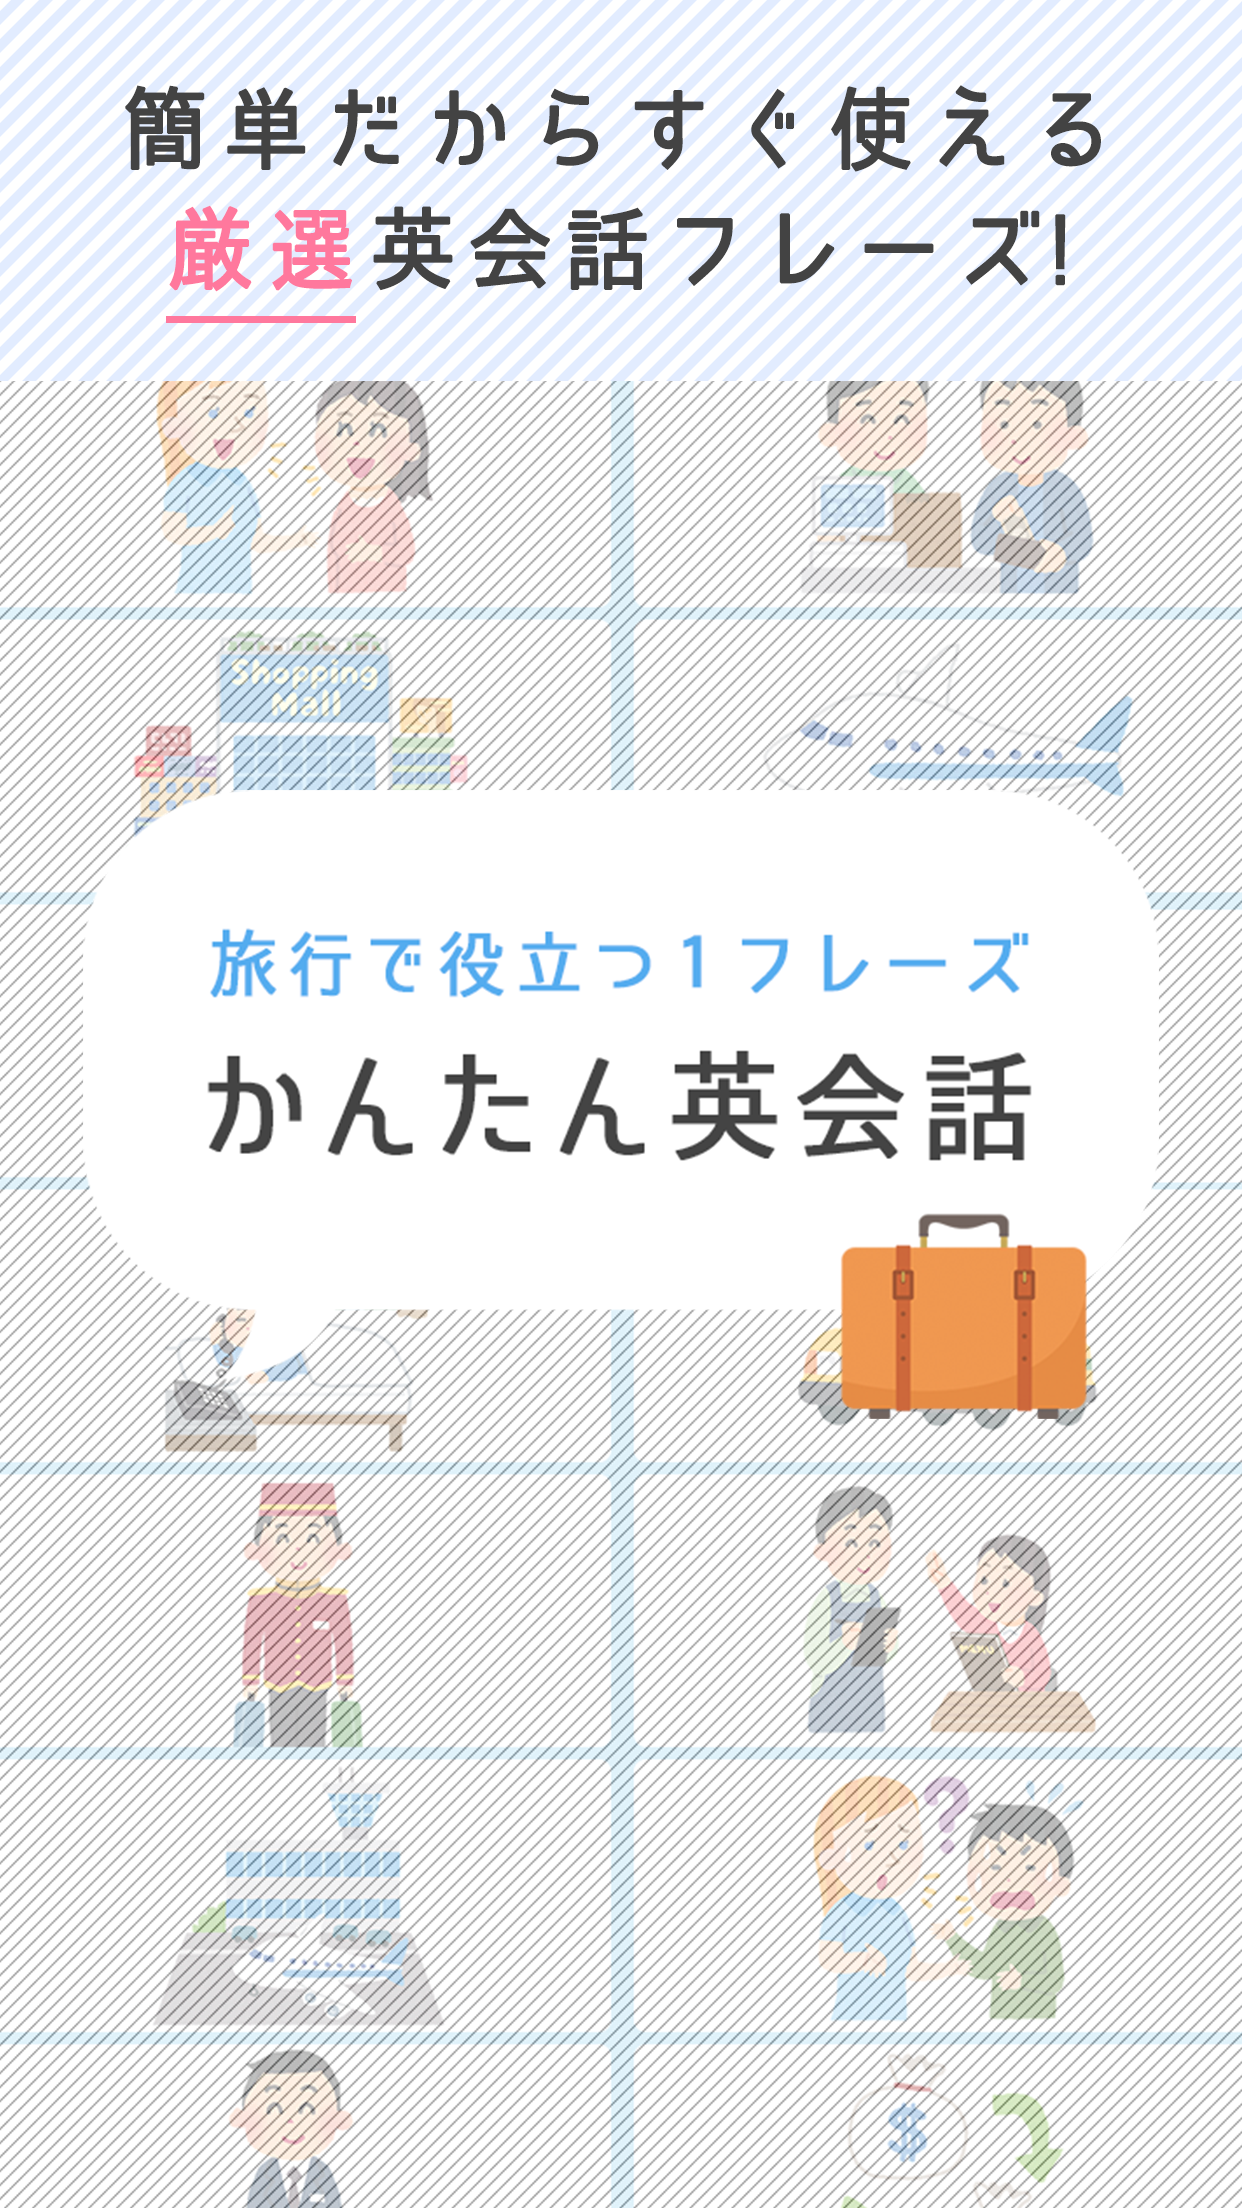 Screenshot 1 of Percakapan Bahasa Inggris Mudah - Kuis Bahasa Inggris Mudah Gratis yang Berguna untuk Bepergian ke Luar Negeri- 1.1.3